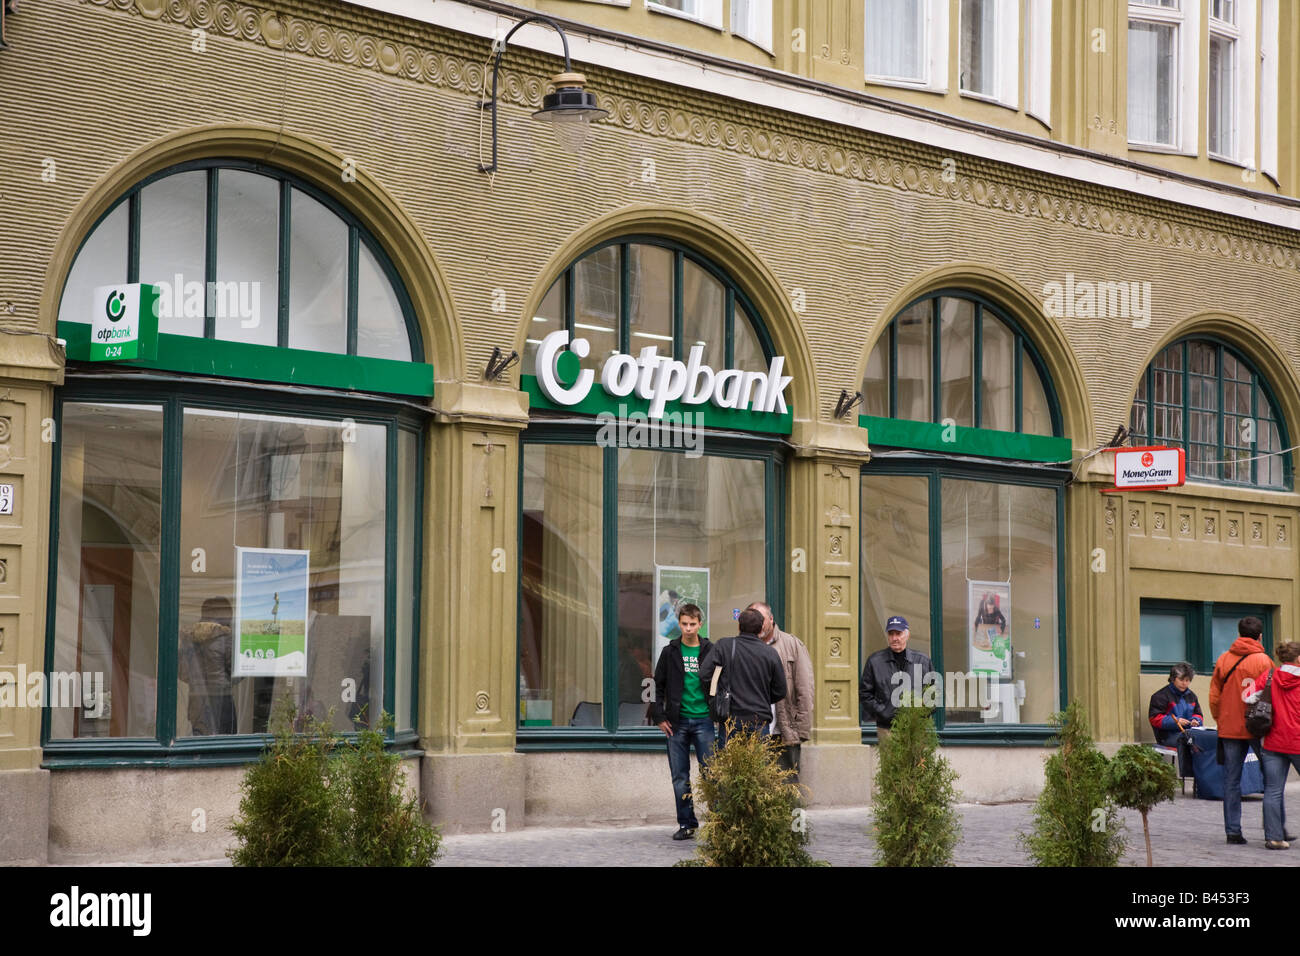 Brasov-Siebenbürgen-Rumänien-Europa-OptBank Retail-Banking-Bereich Gebäude außen Stockfoto